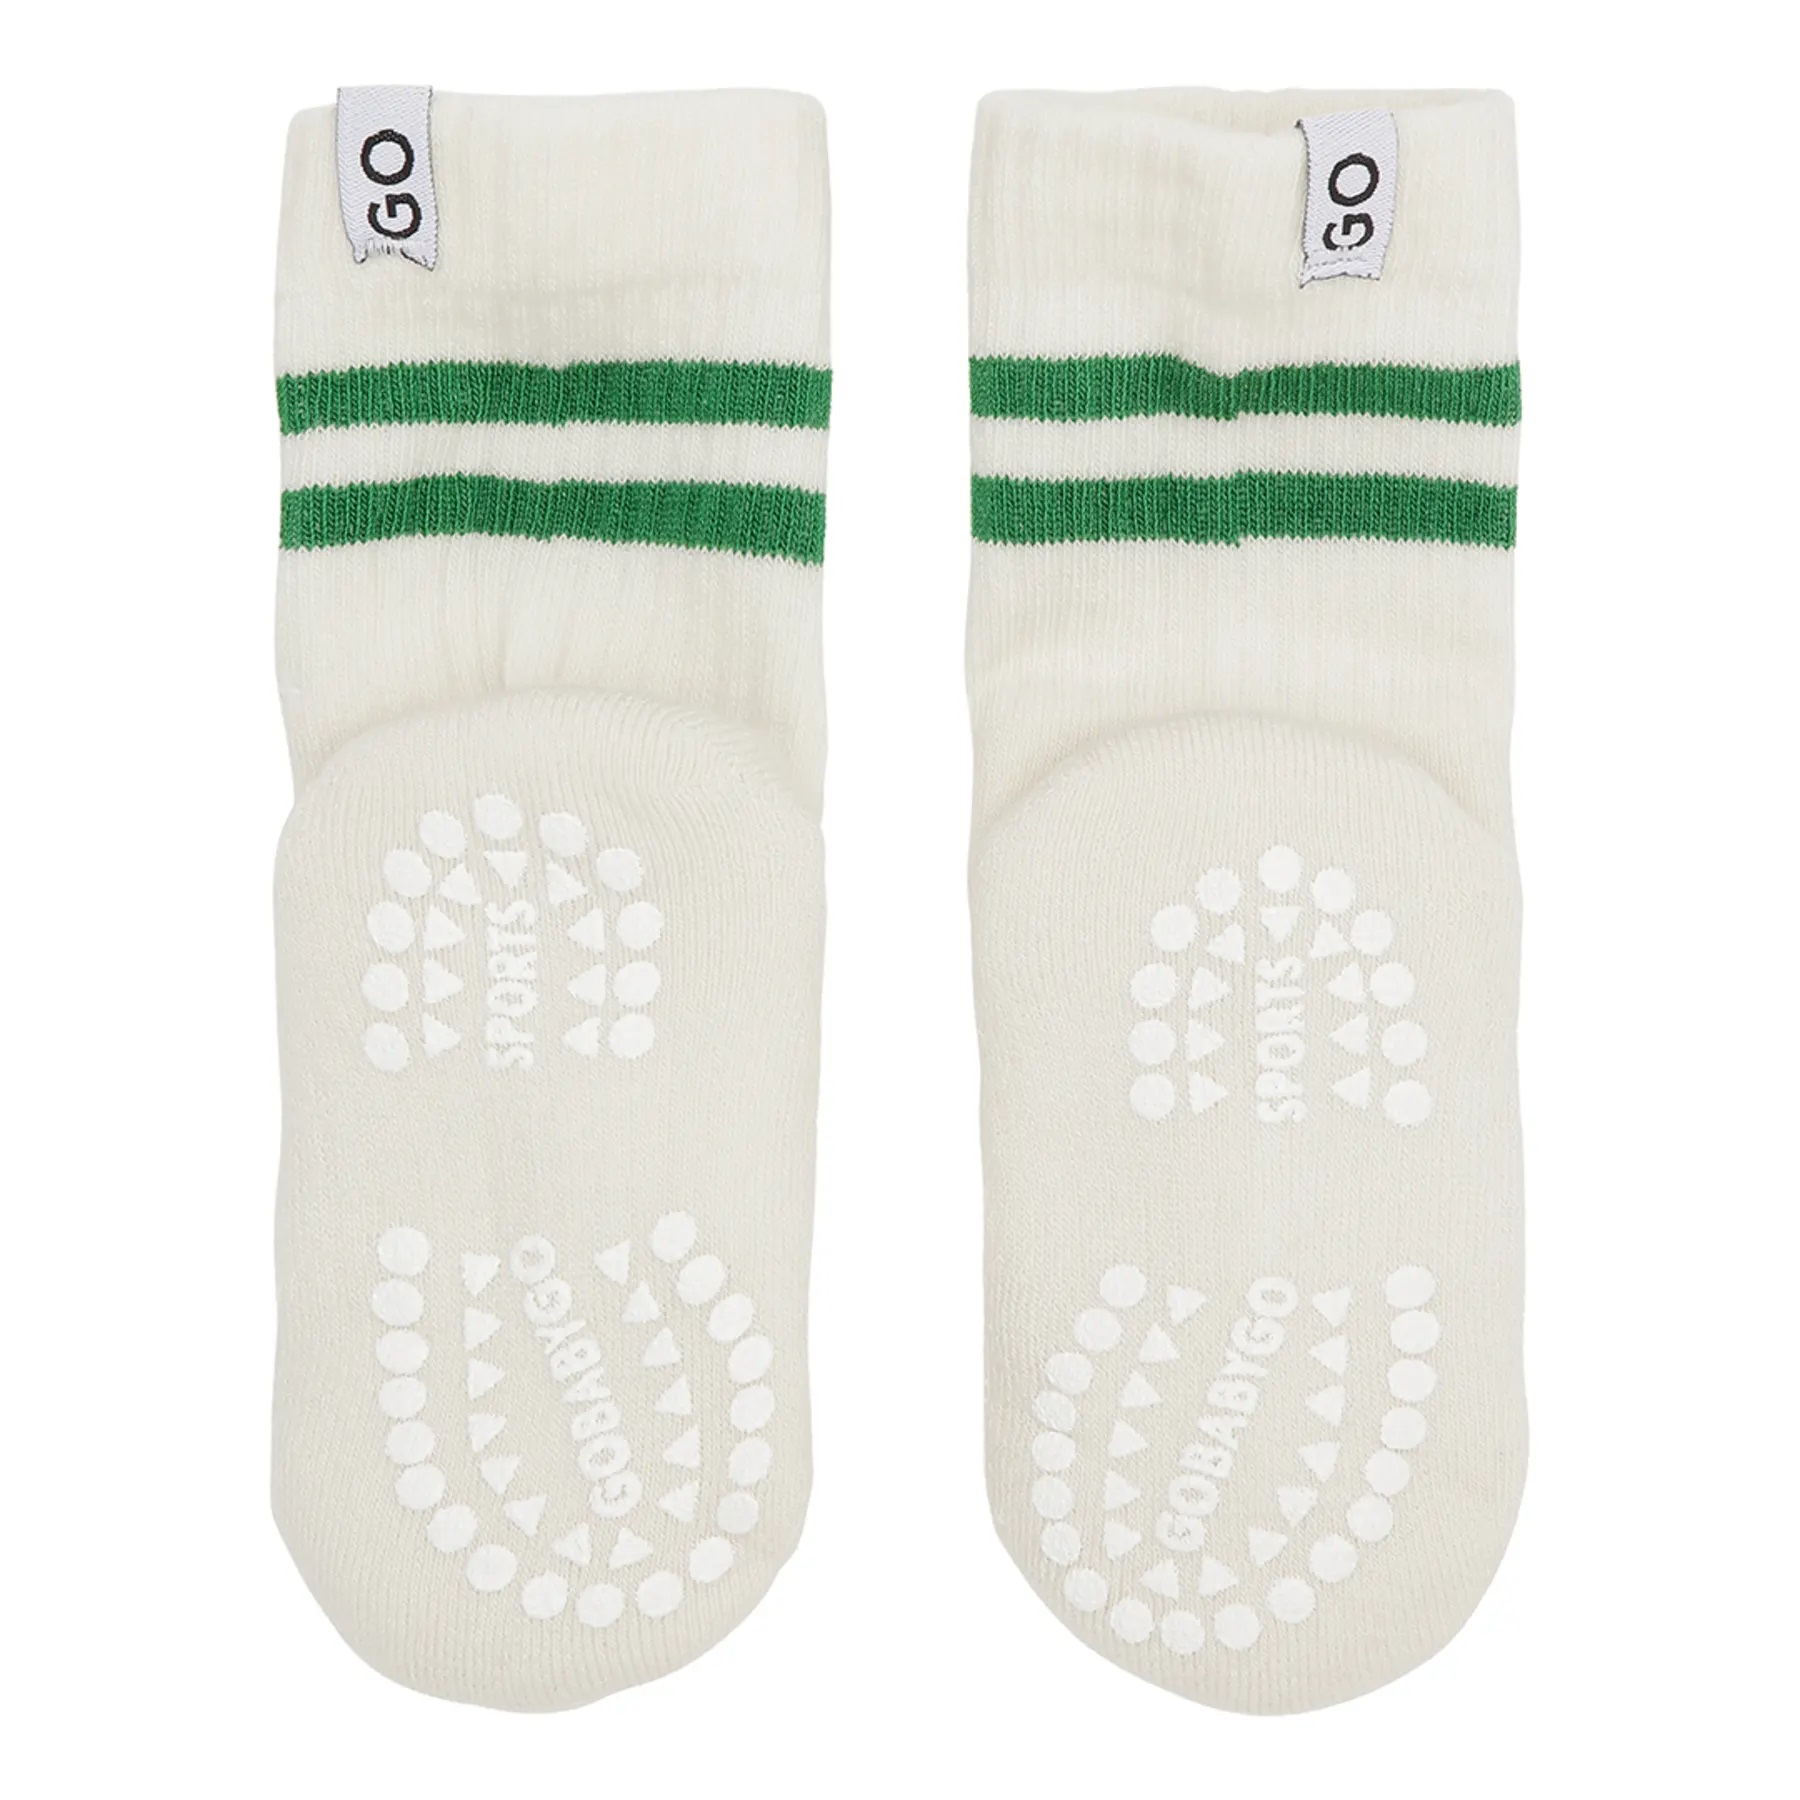 GoBabyGo Sport Socken Anti Rutsch Grün Green